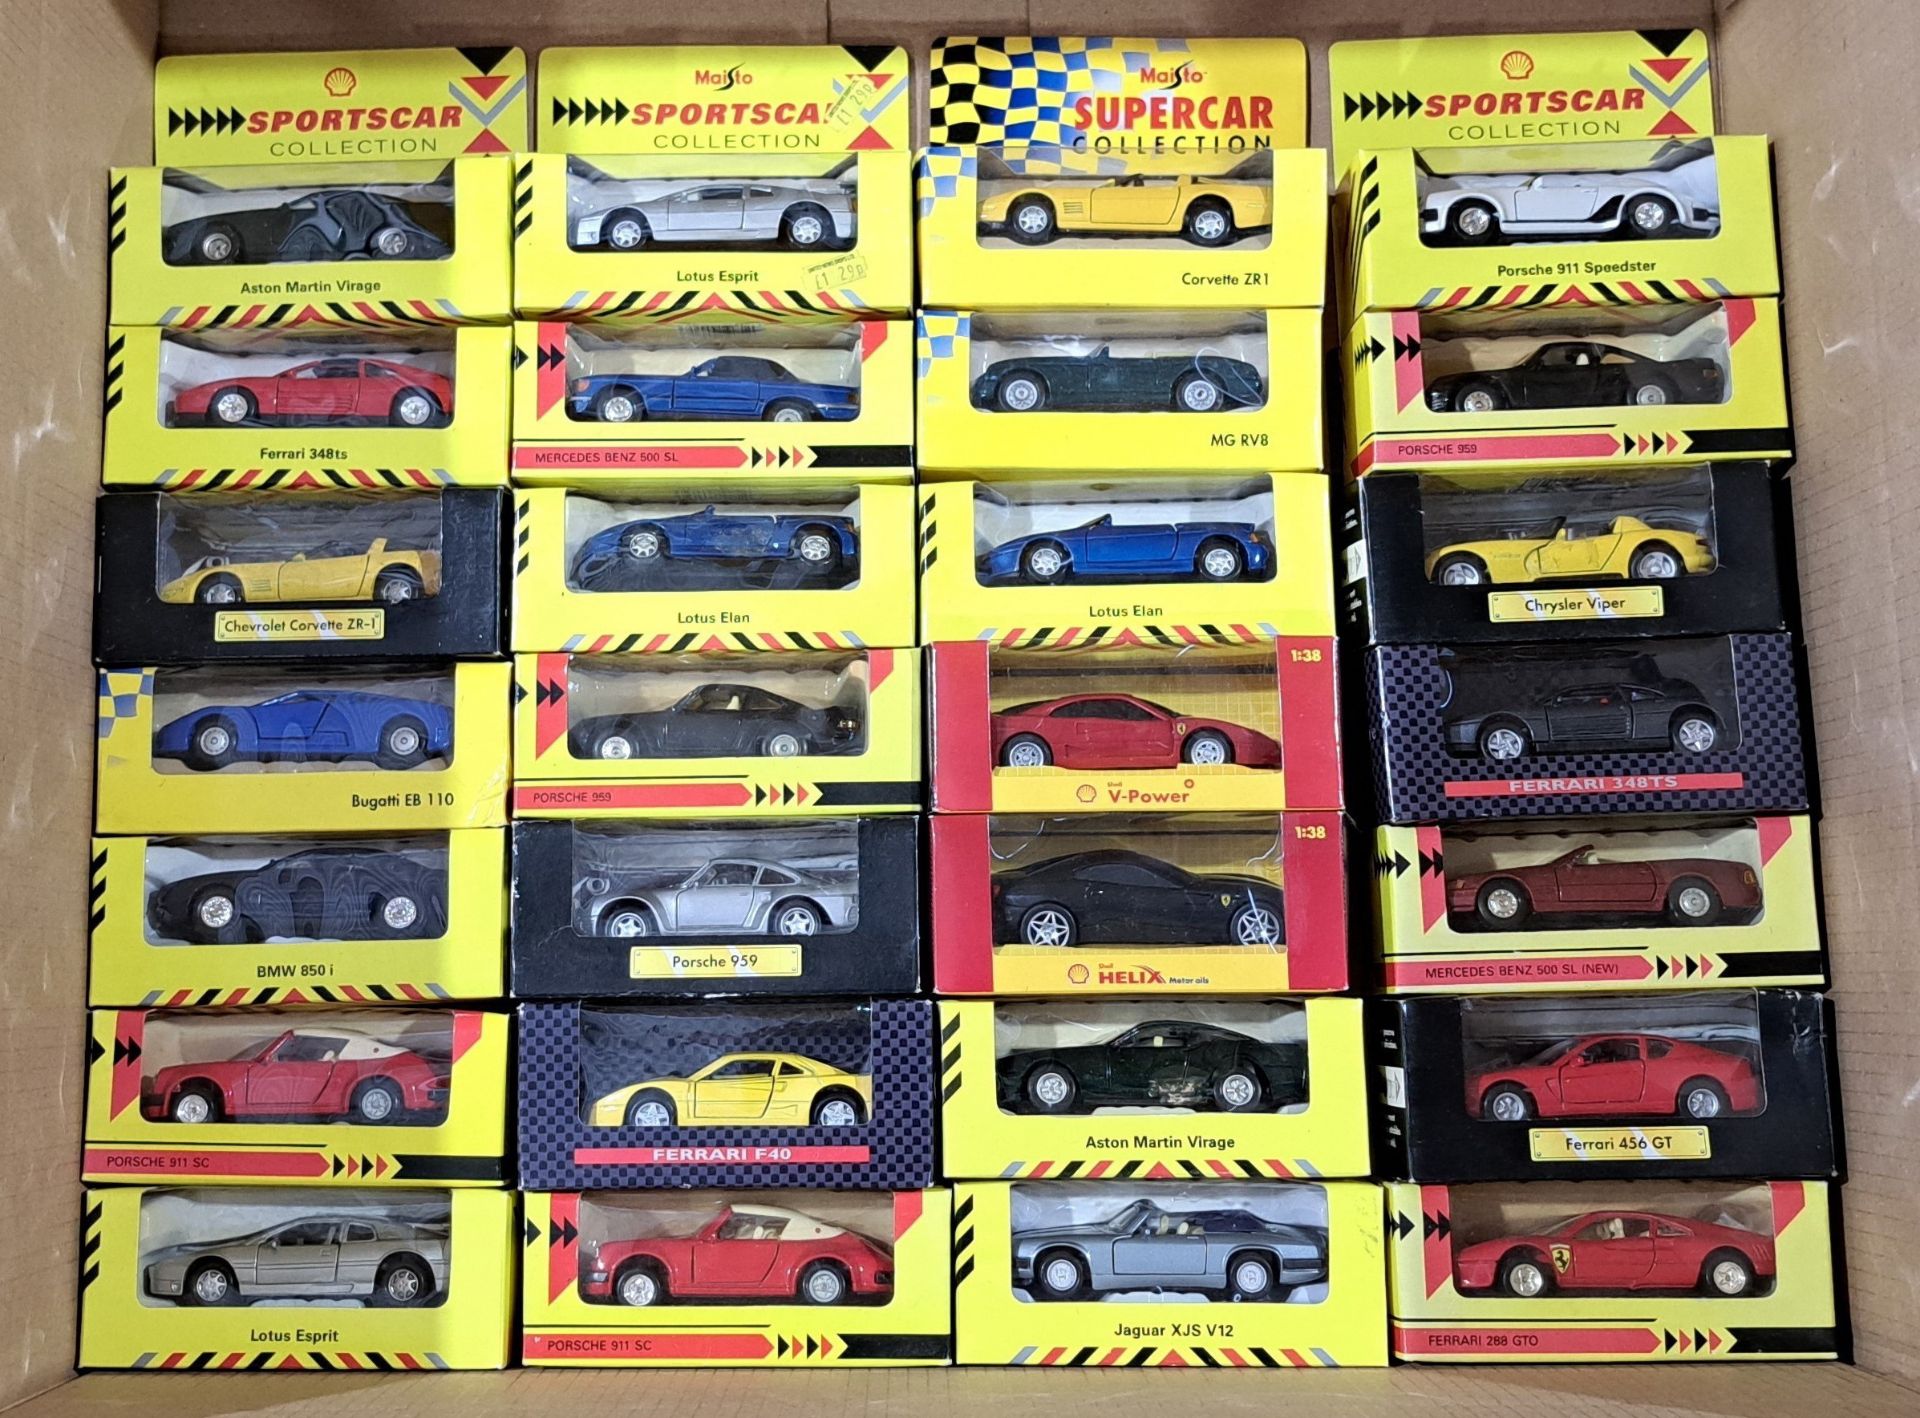 Maisto Supercar Collection & similar, a boxed mixed group